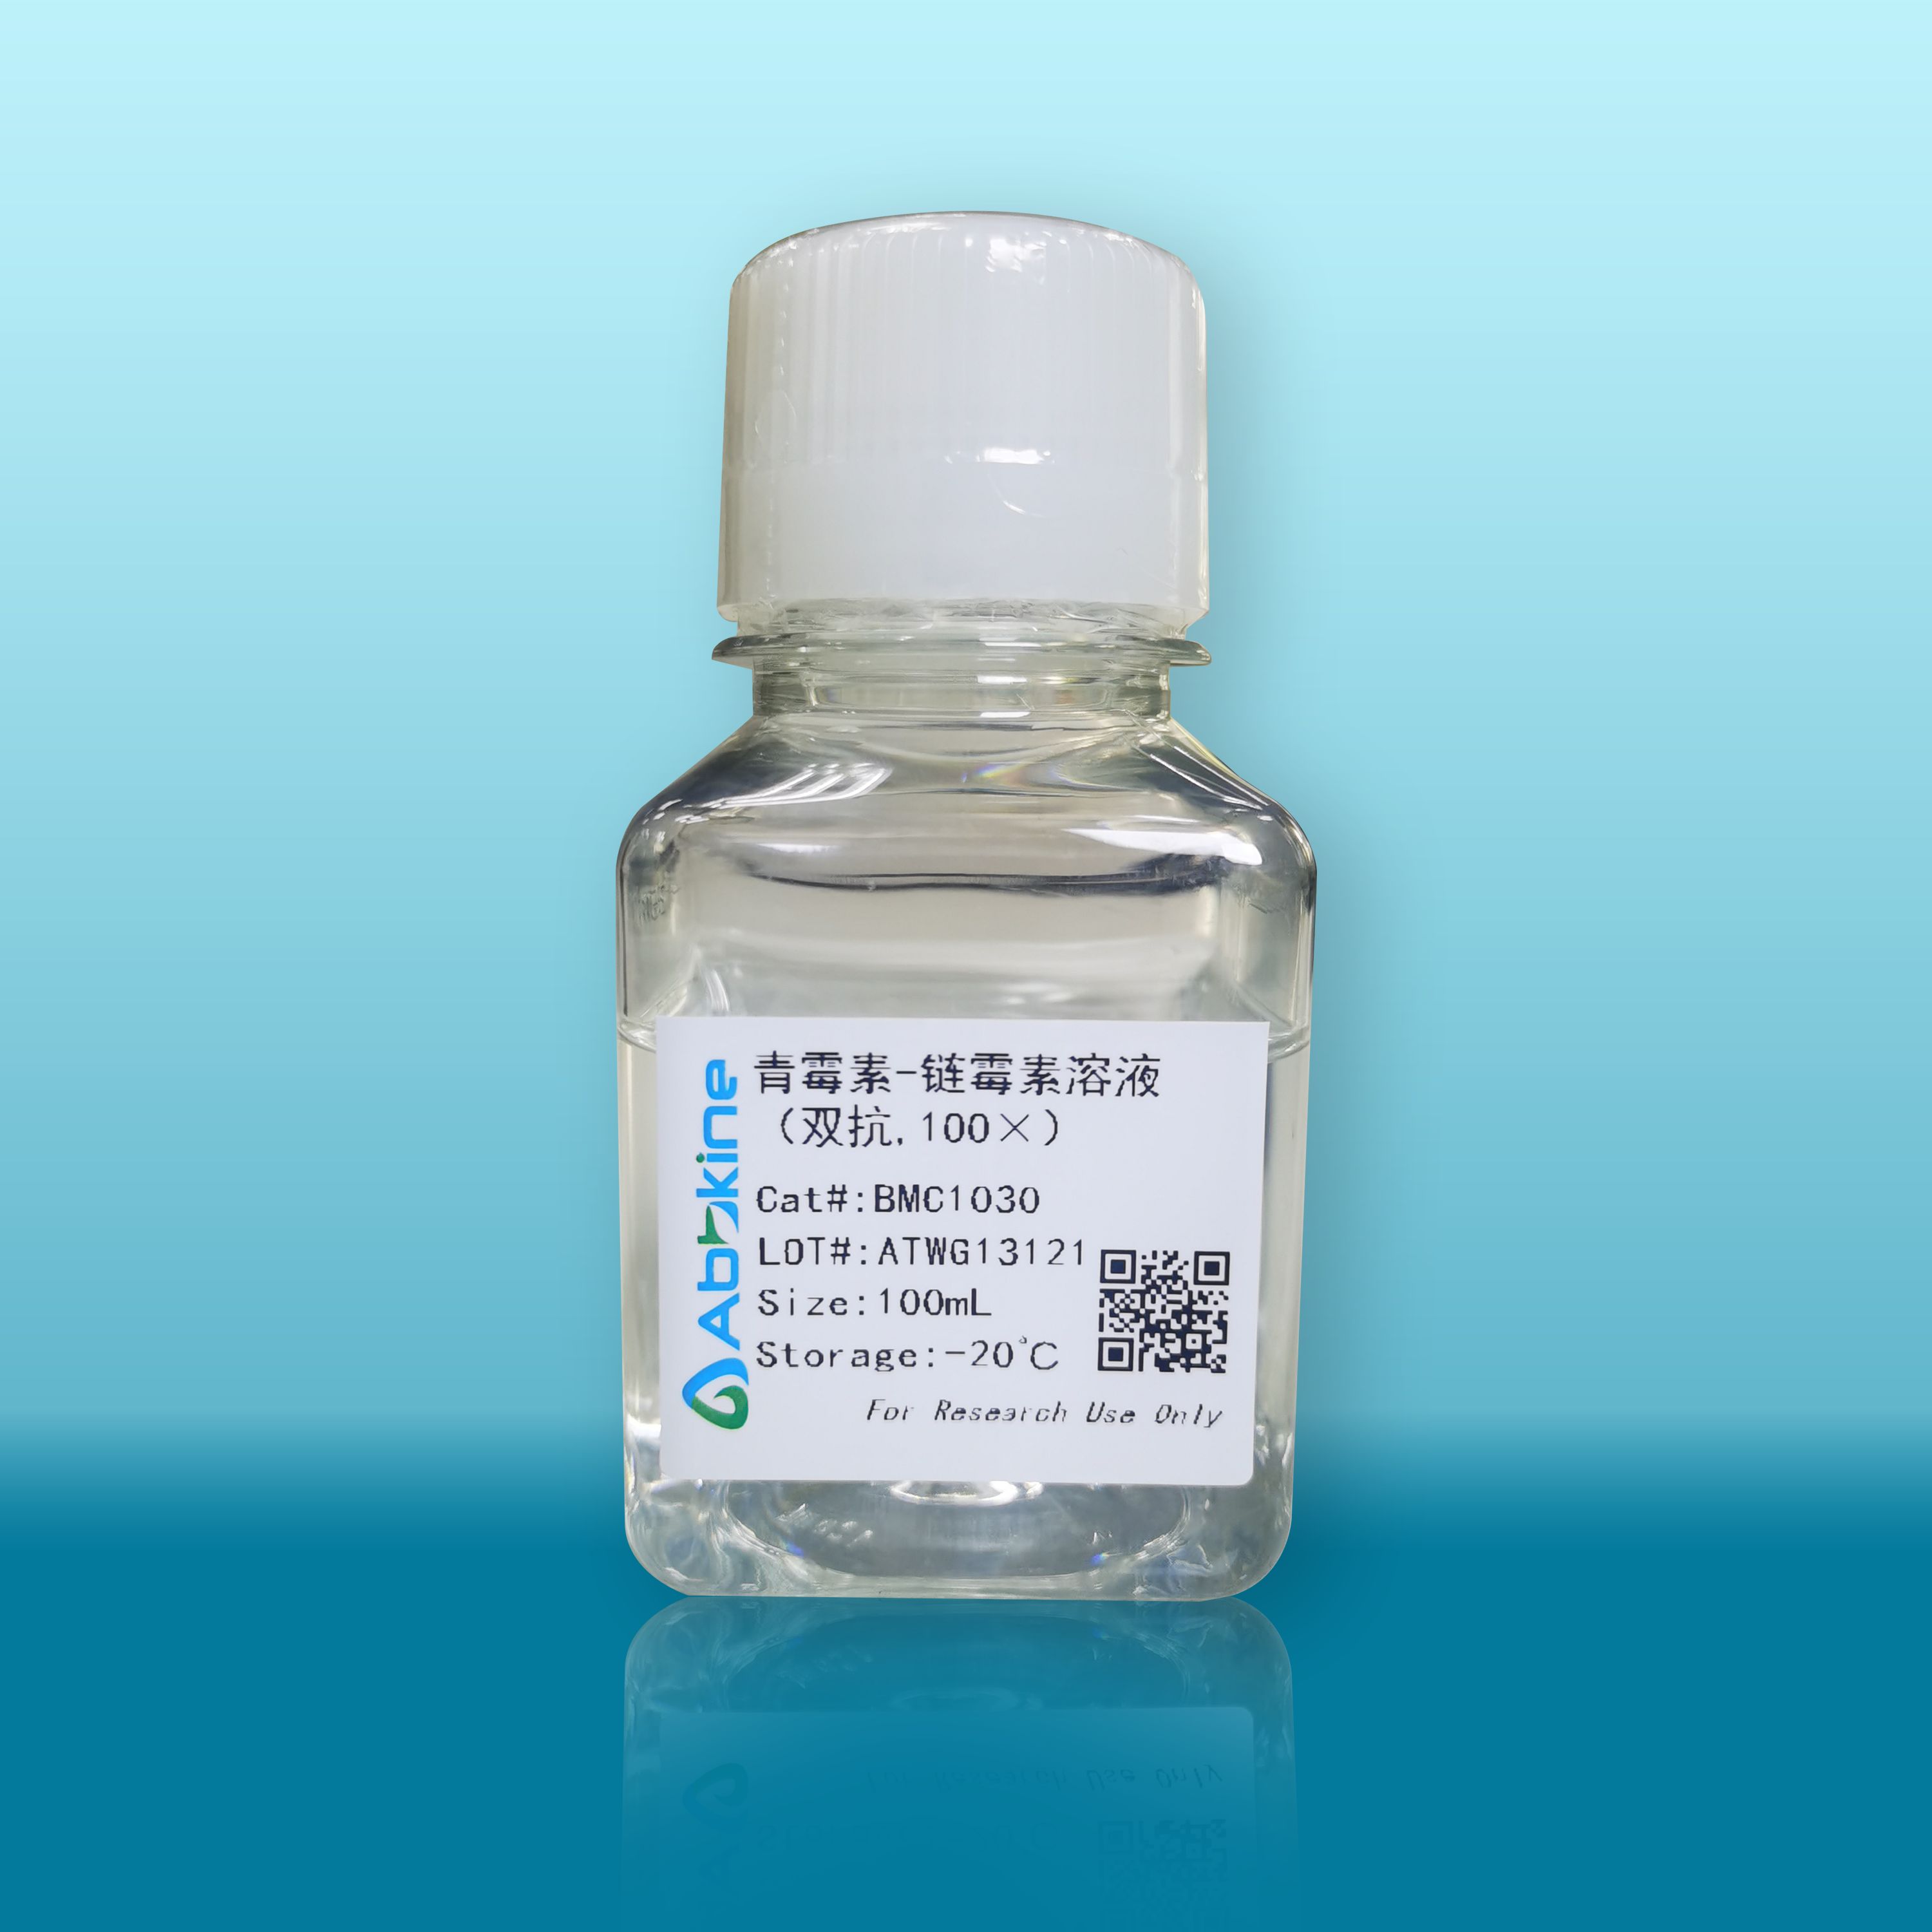 SuperKine™ Lipo3.0高效转染试剂